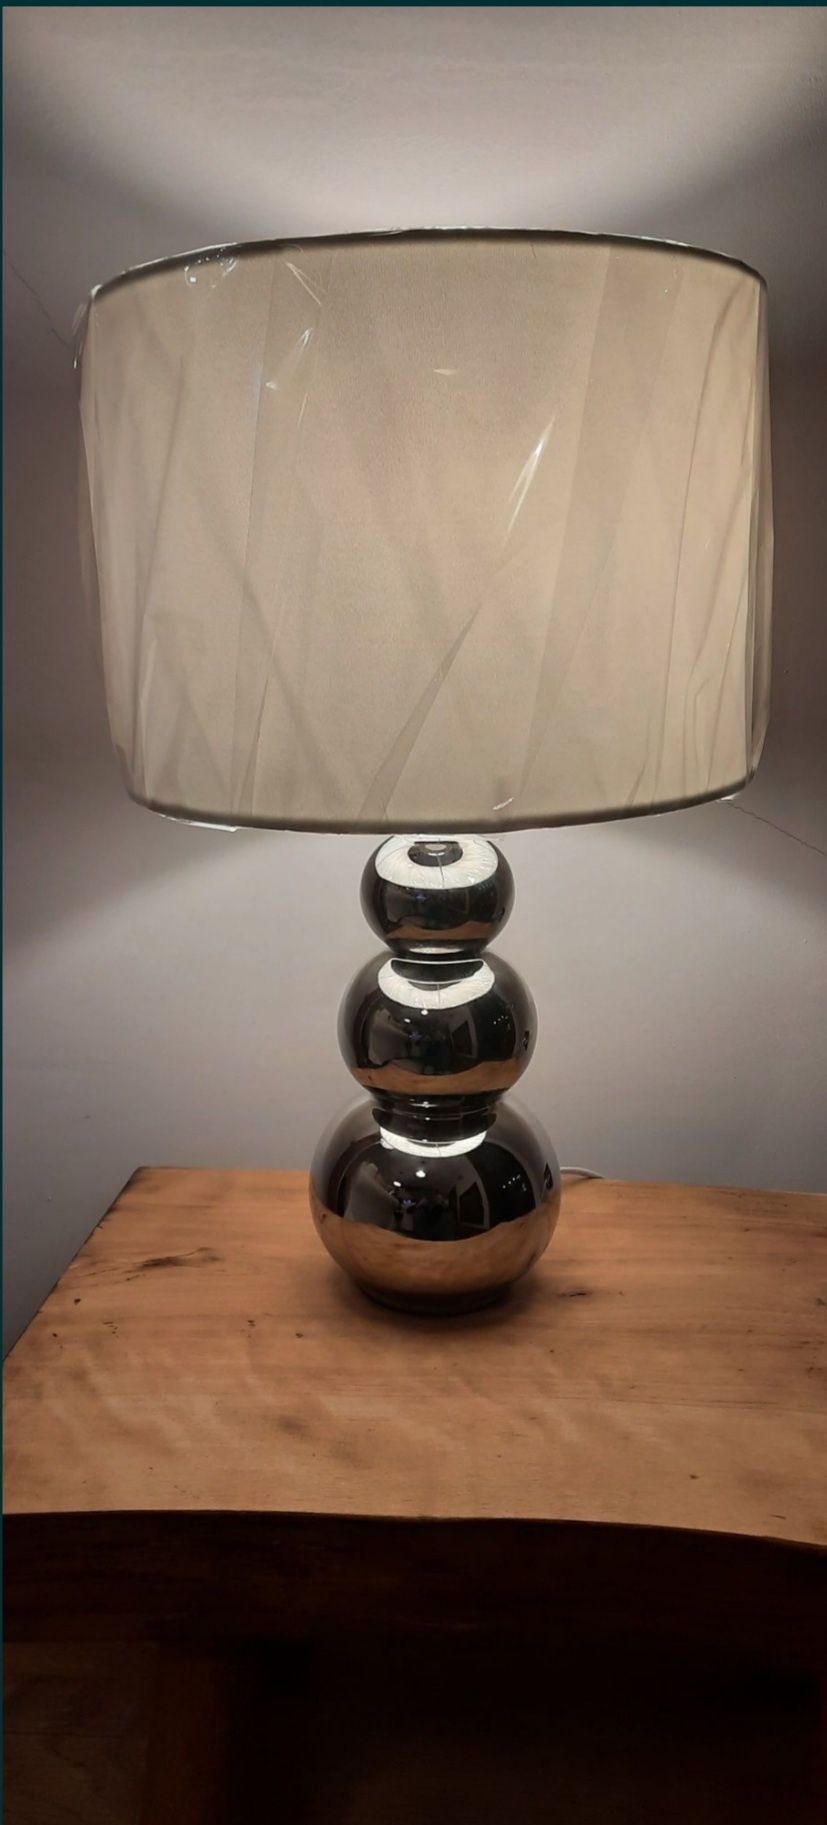 Lampa nowa duża glamour cena są 2 sztuki lampka stołowa